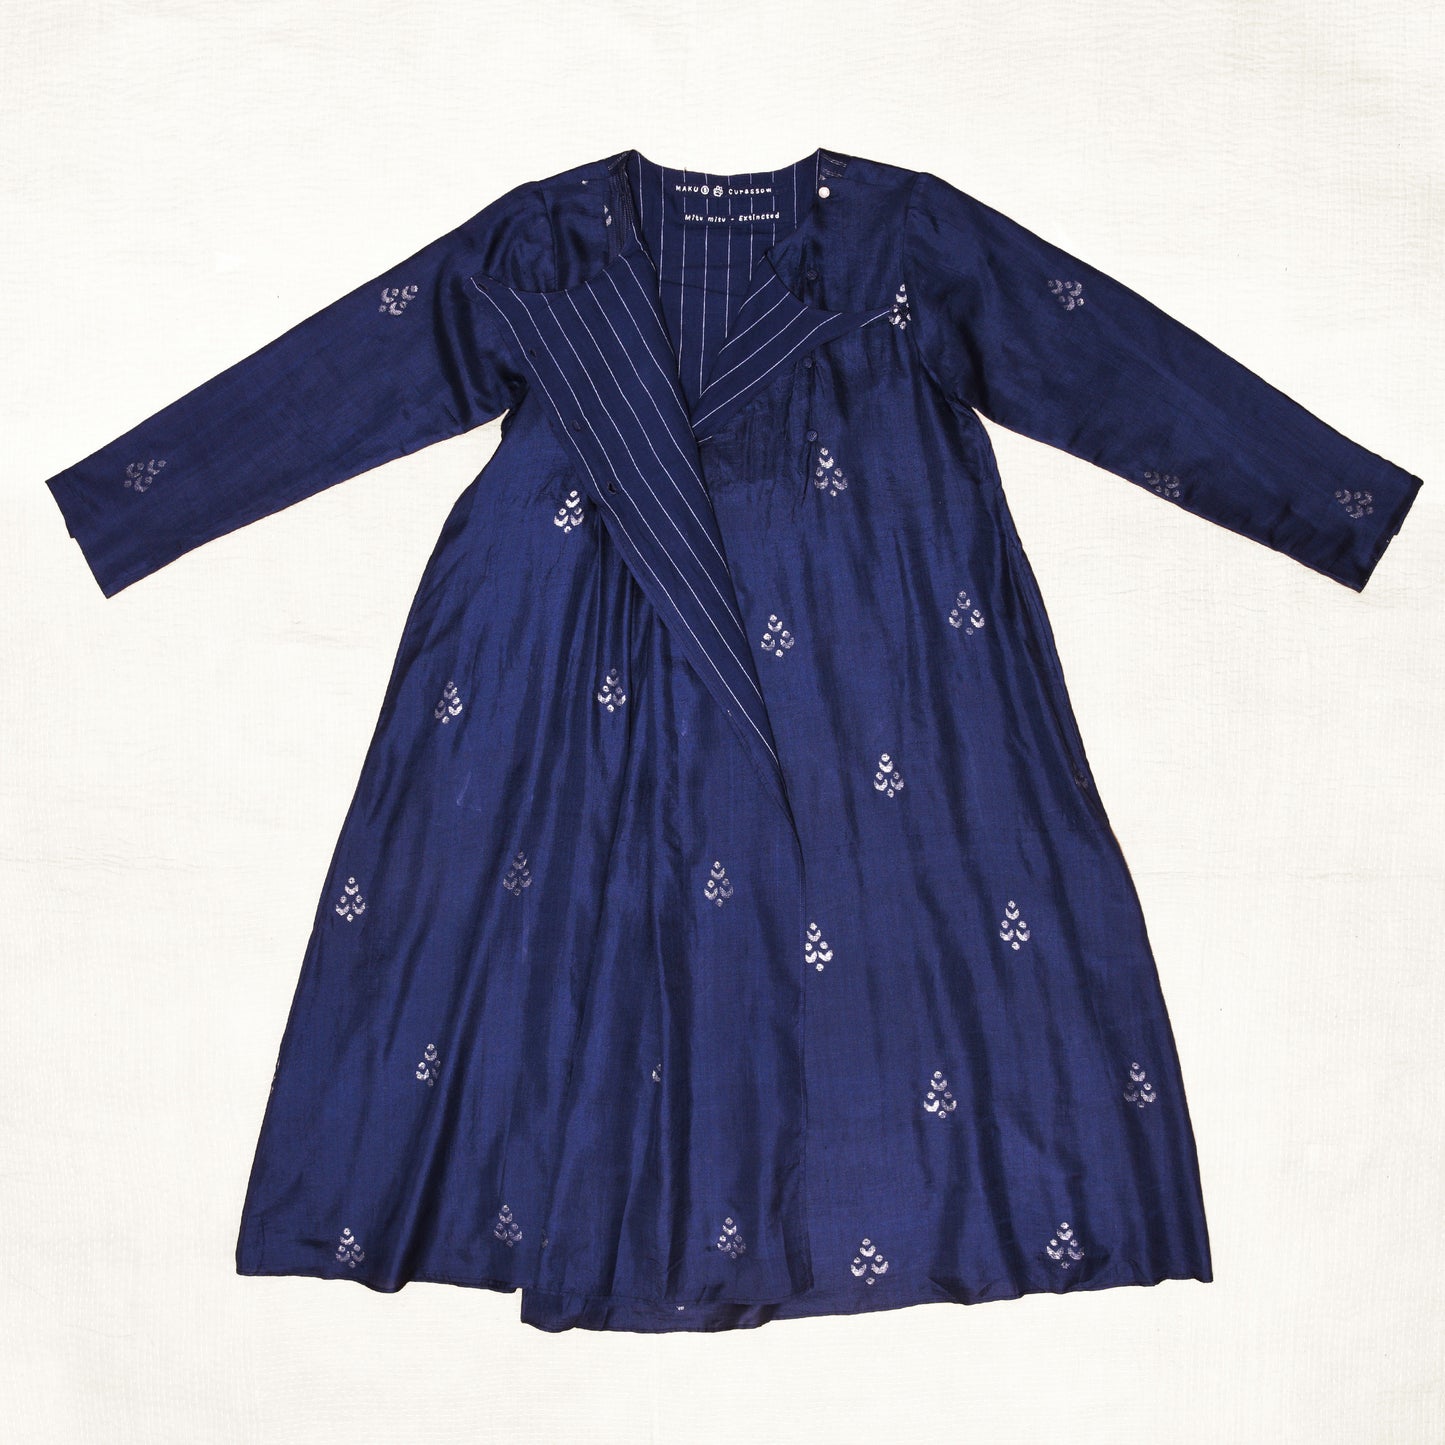 India, Maku Textiles, Currasow dress